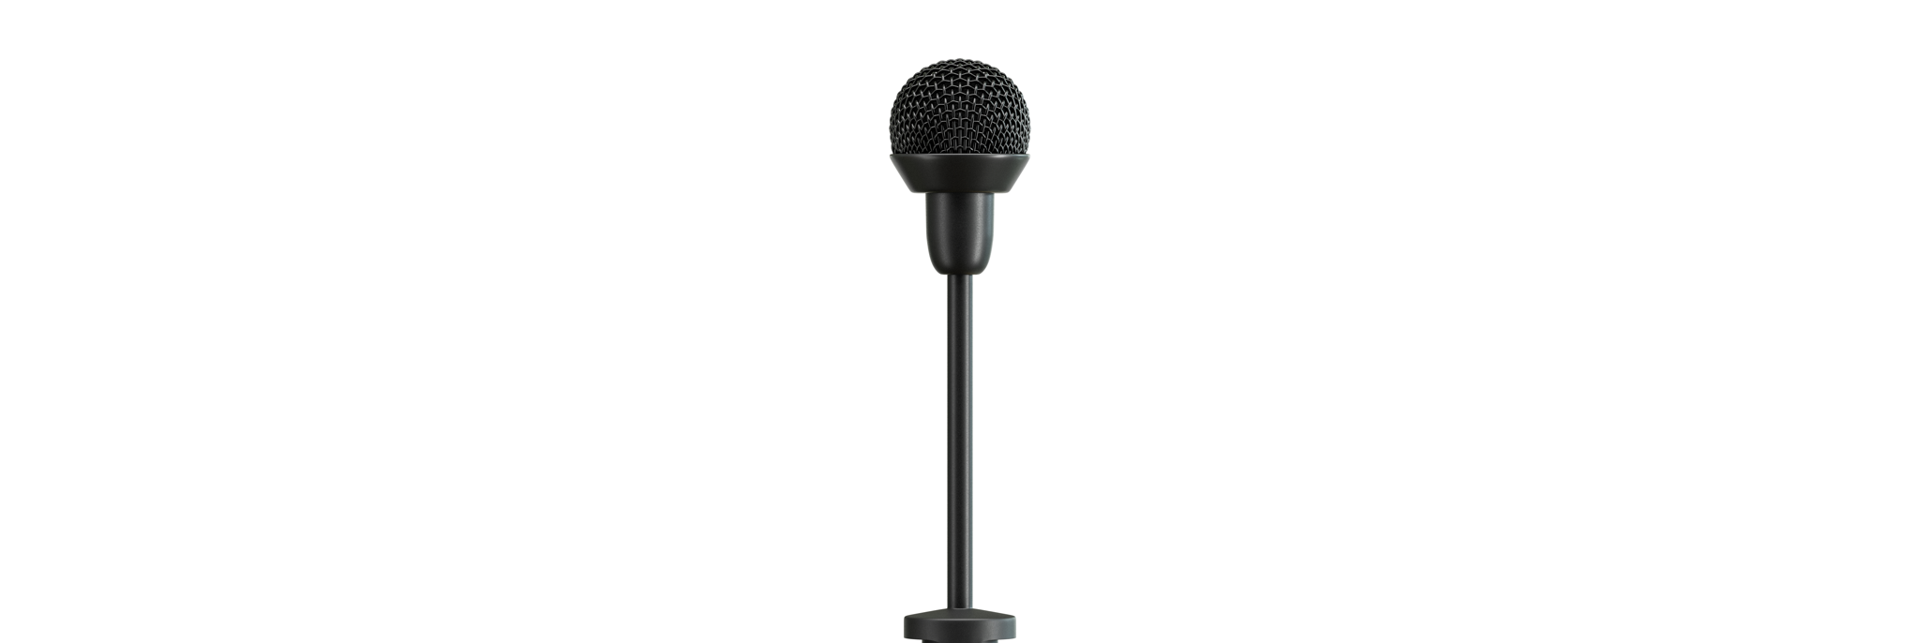 Sennheiser stellt neues Mikrofon für Moderatorinnen und Moderatoren vor